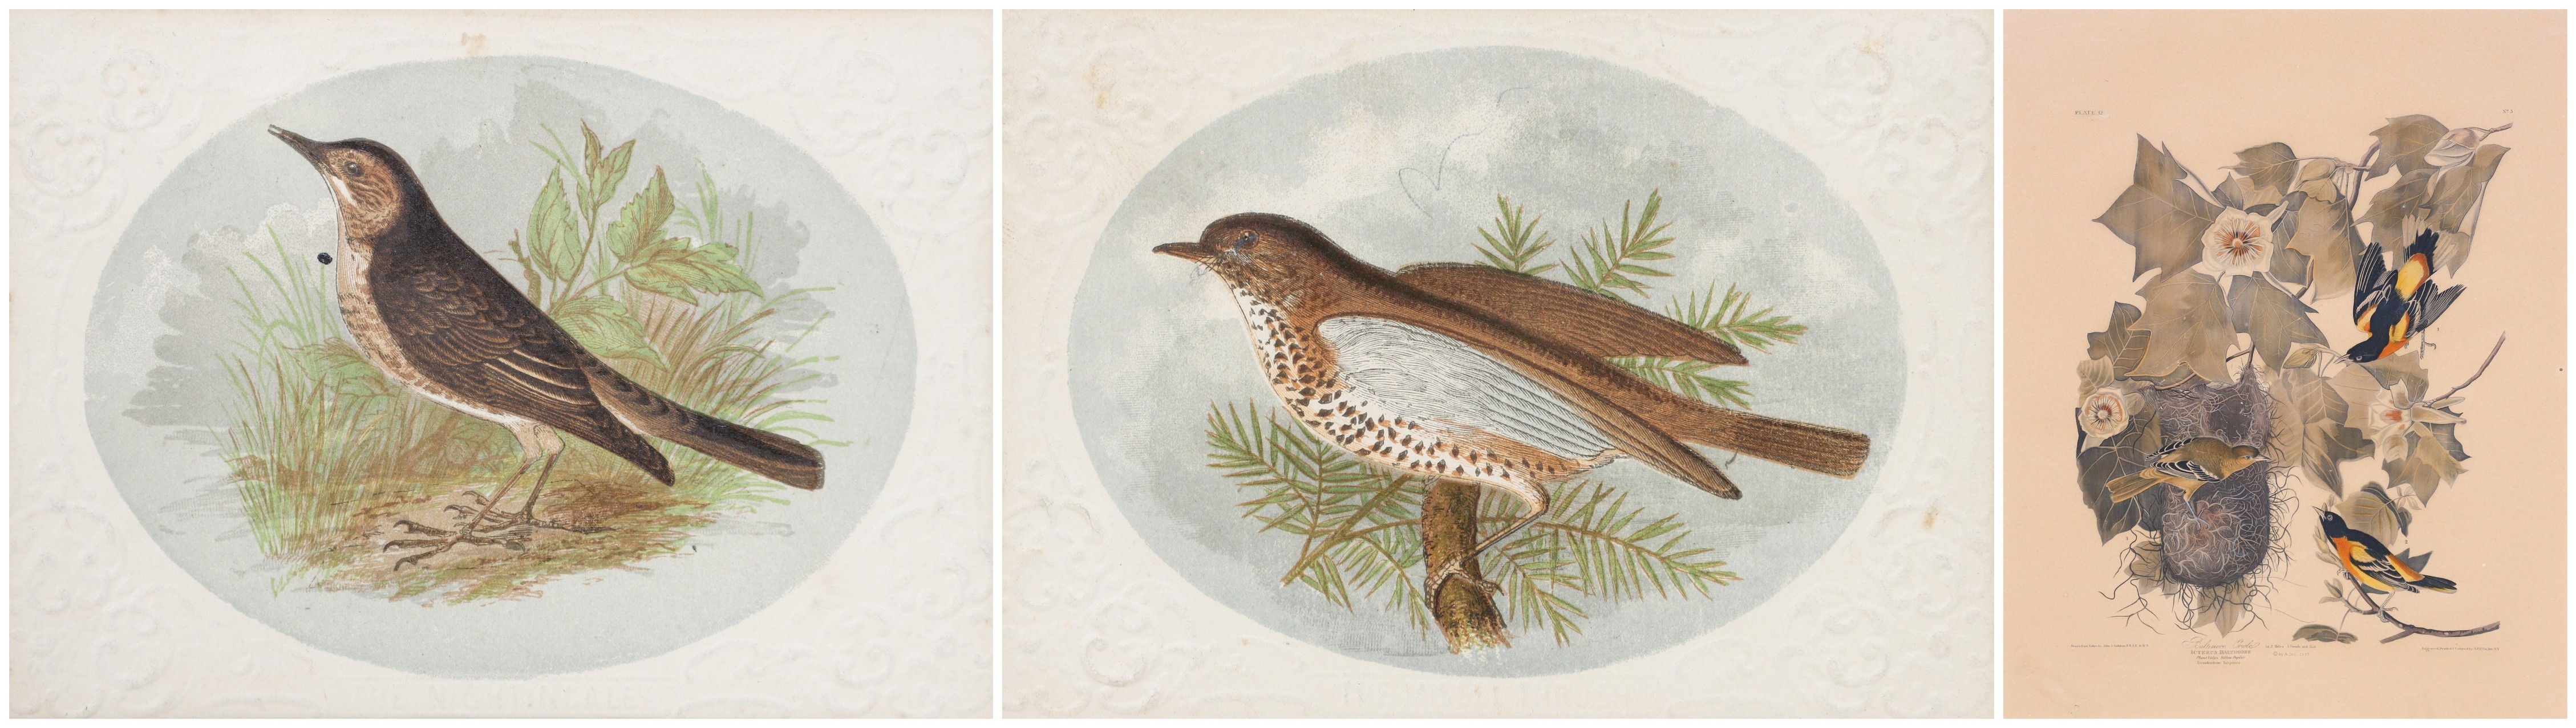  3 Framed Bird Prints 1937 lithograph 2e09de